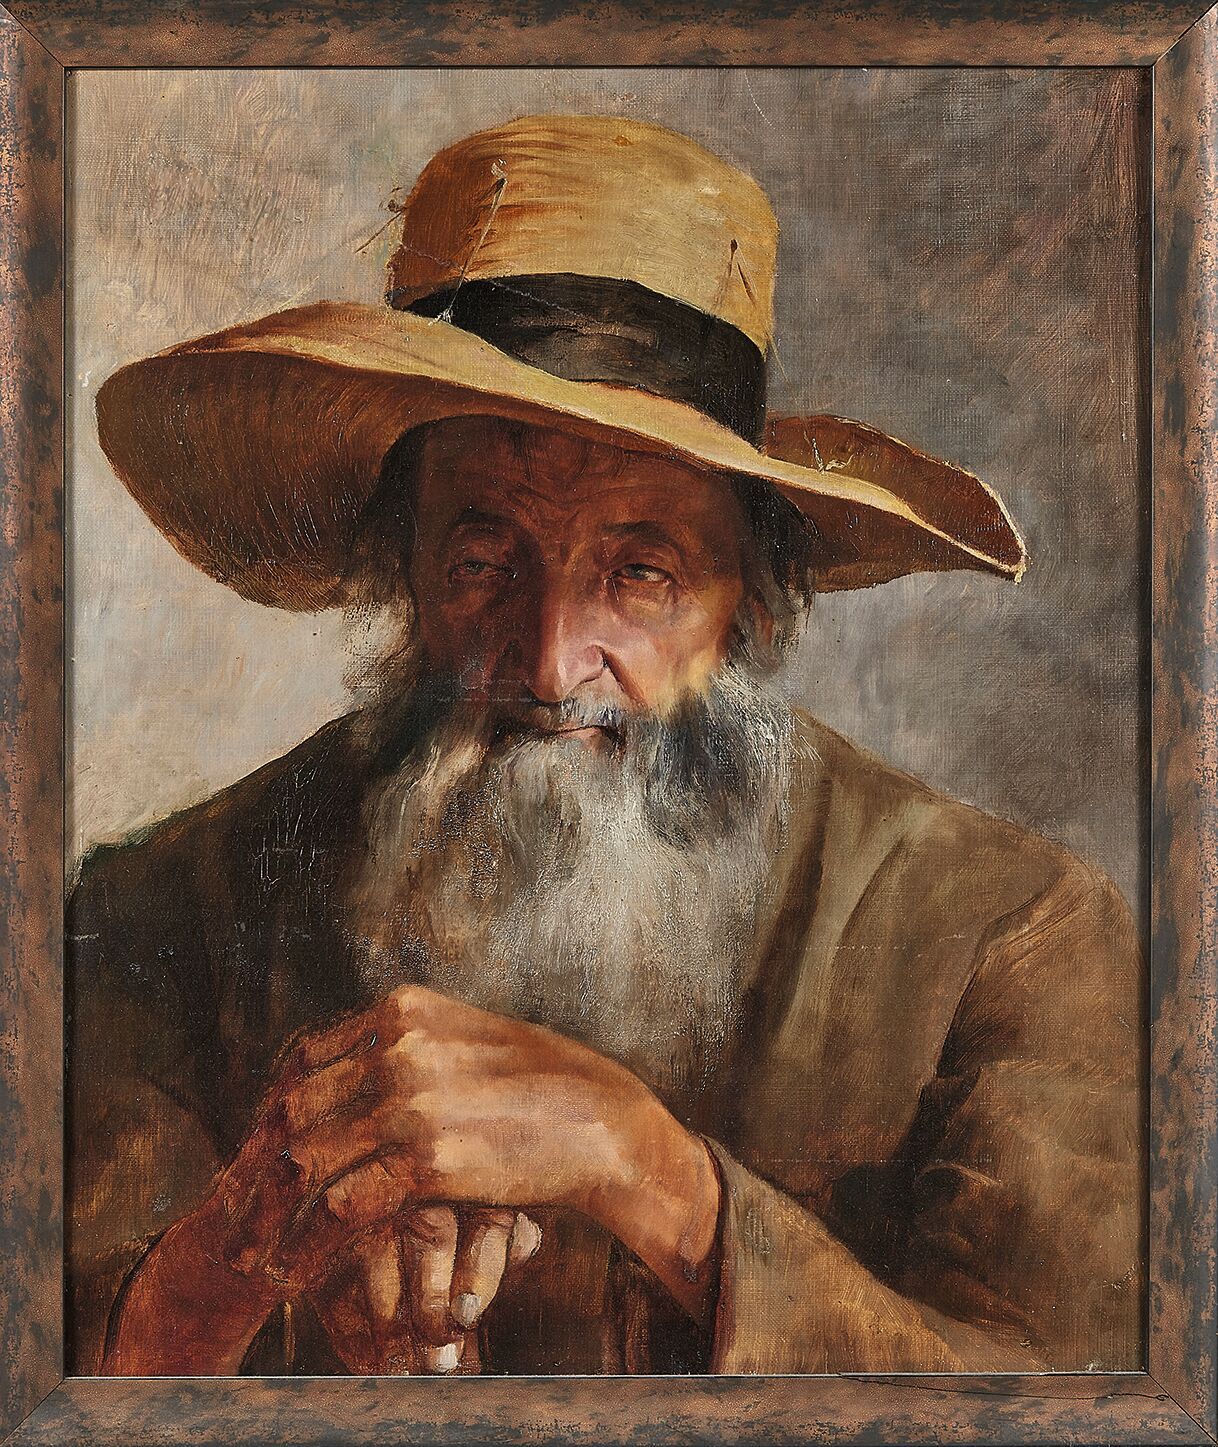 Null SCUOLA MODERNA
L'uomo con il cappello
Olio su tela.
(Restauri).
55 x 46 cm